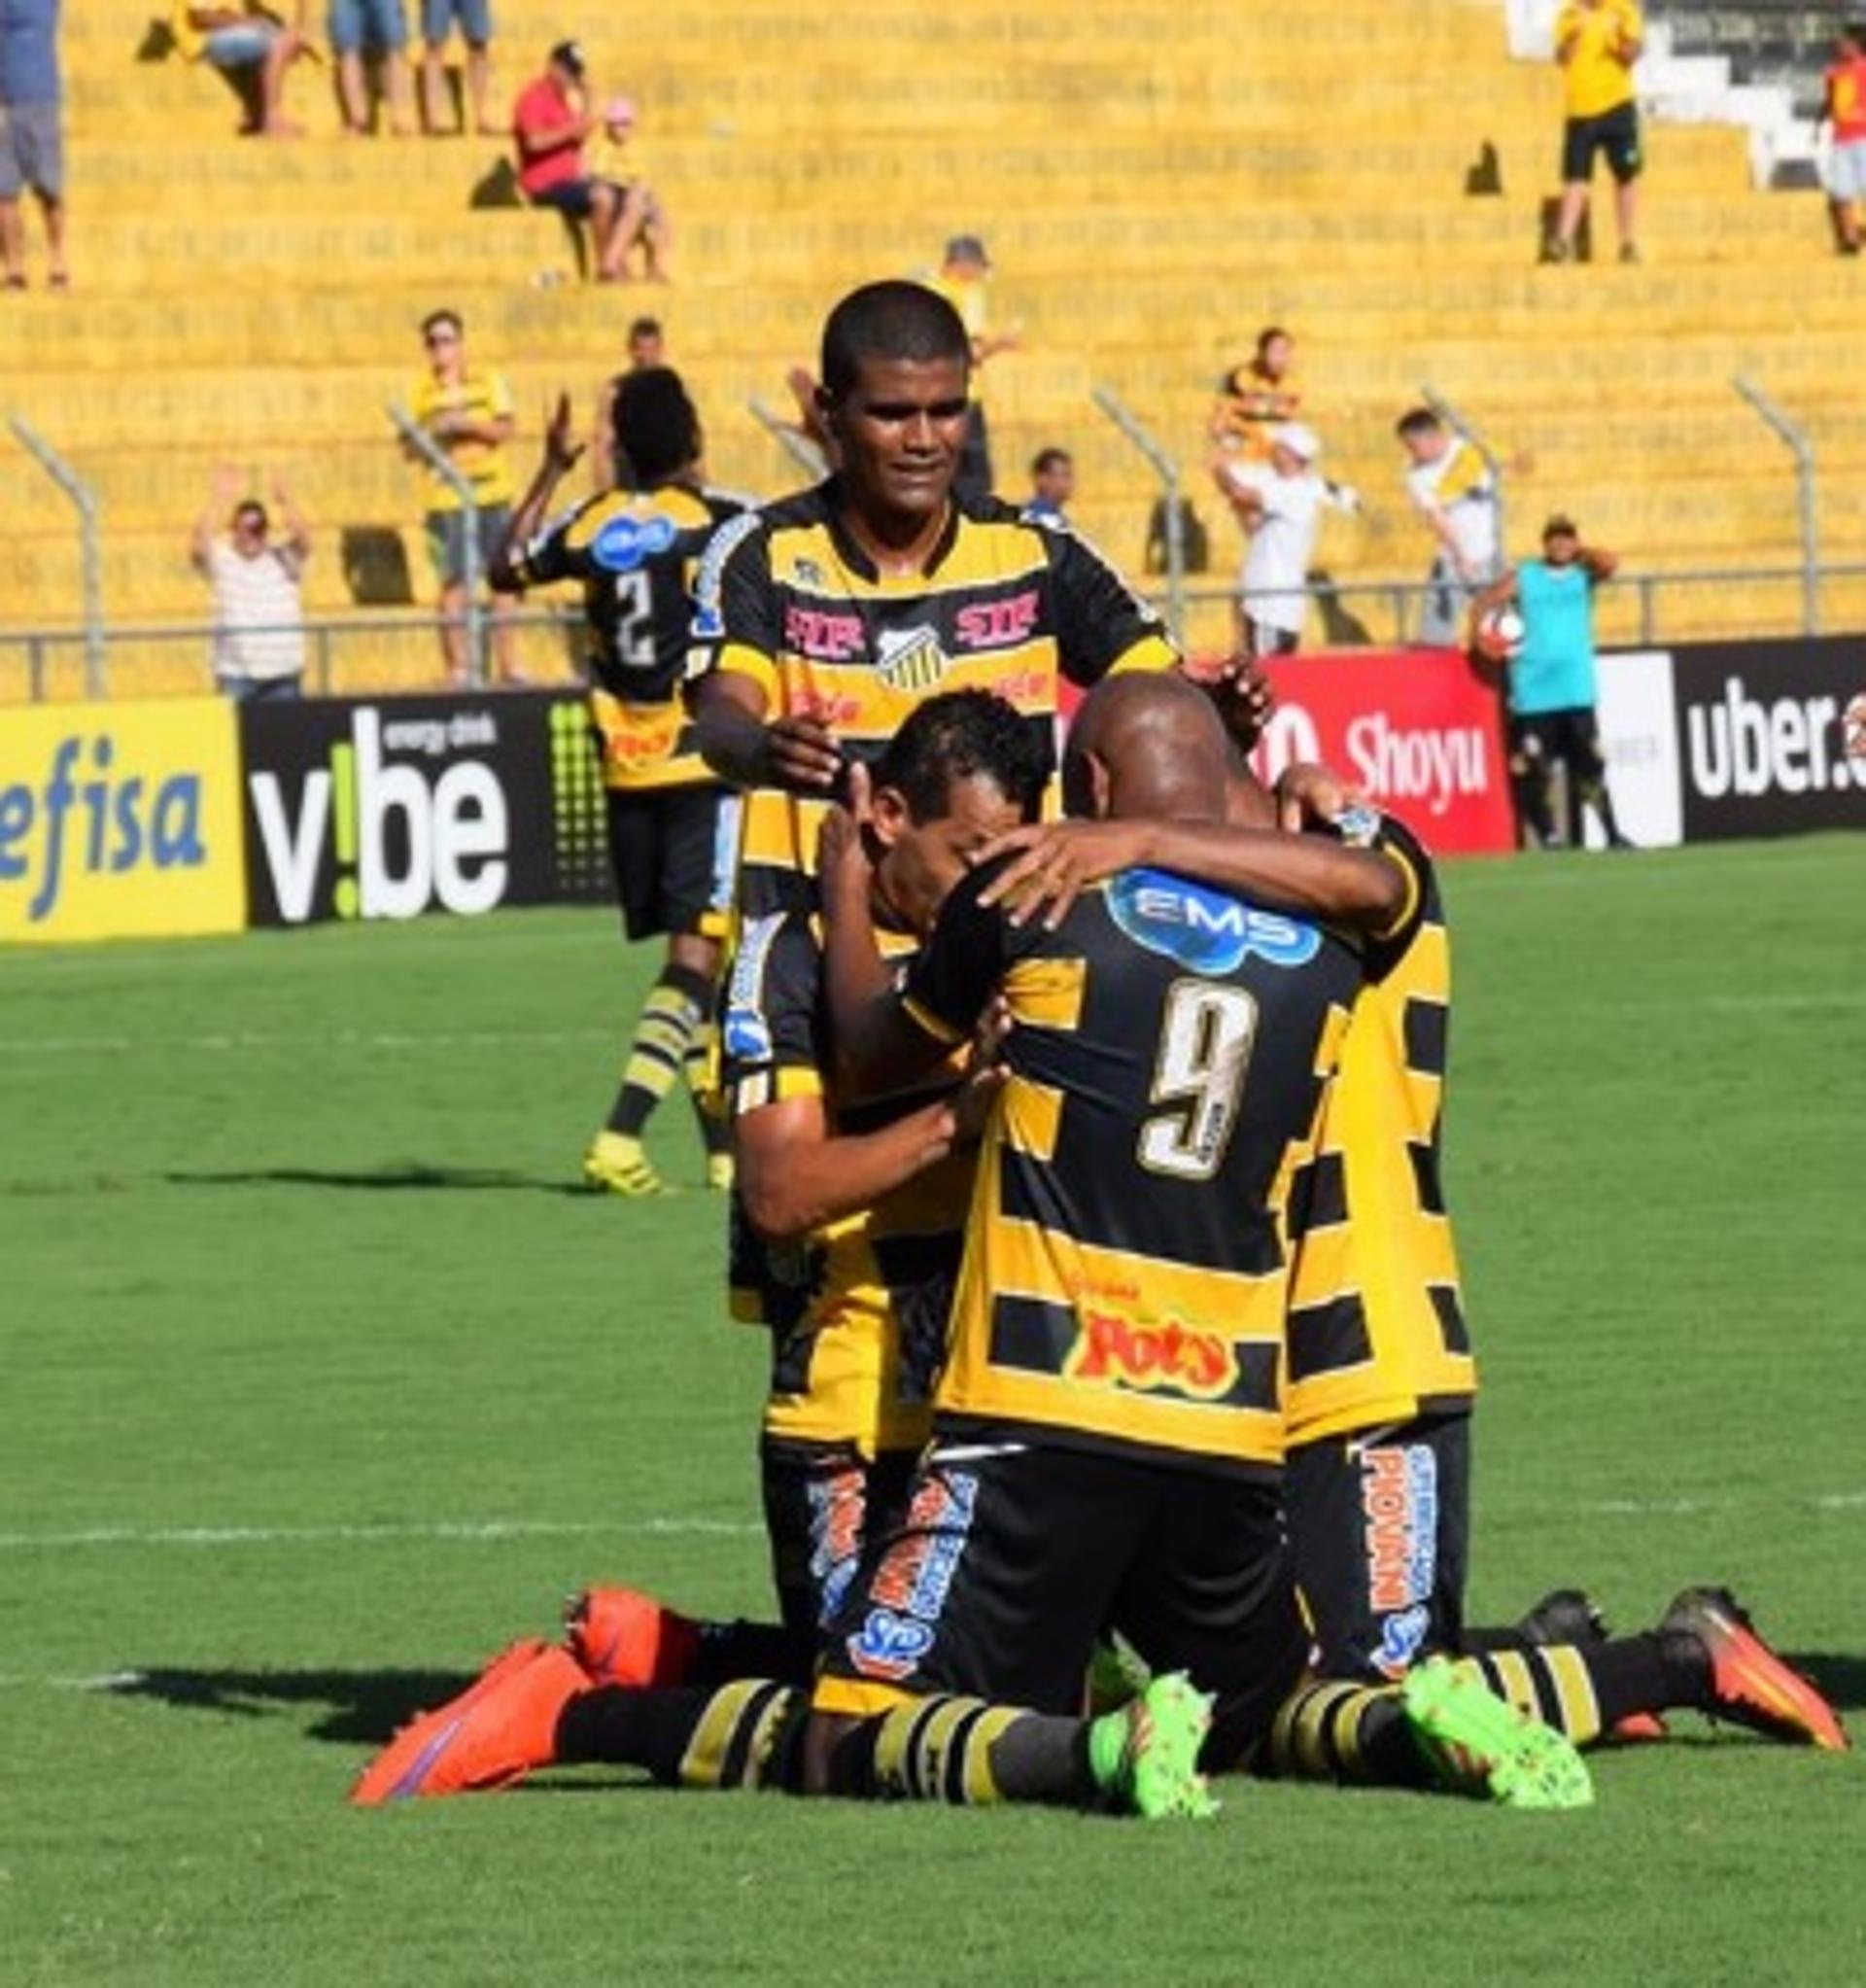 Jogadores do Novorizontino comemoram gol em jogo válido pelo Paulista (Foto: Jonatan Dutra / Divulgação / Site Oficial Novorizontino)